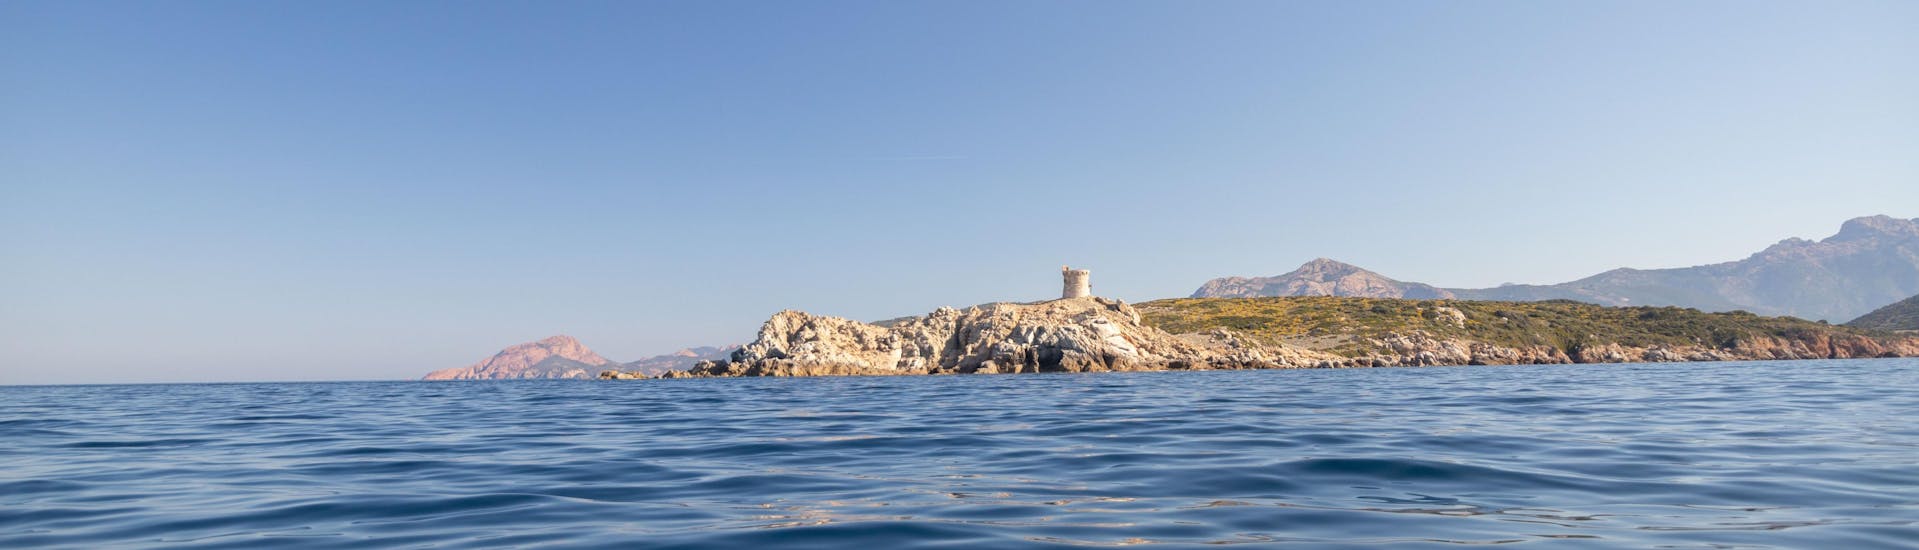 Vue de la côte de Cargèse depuis la mer.